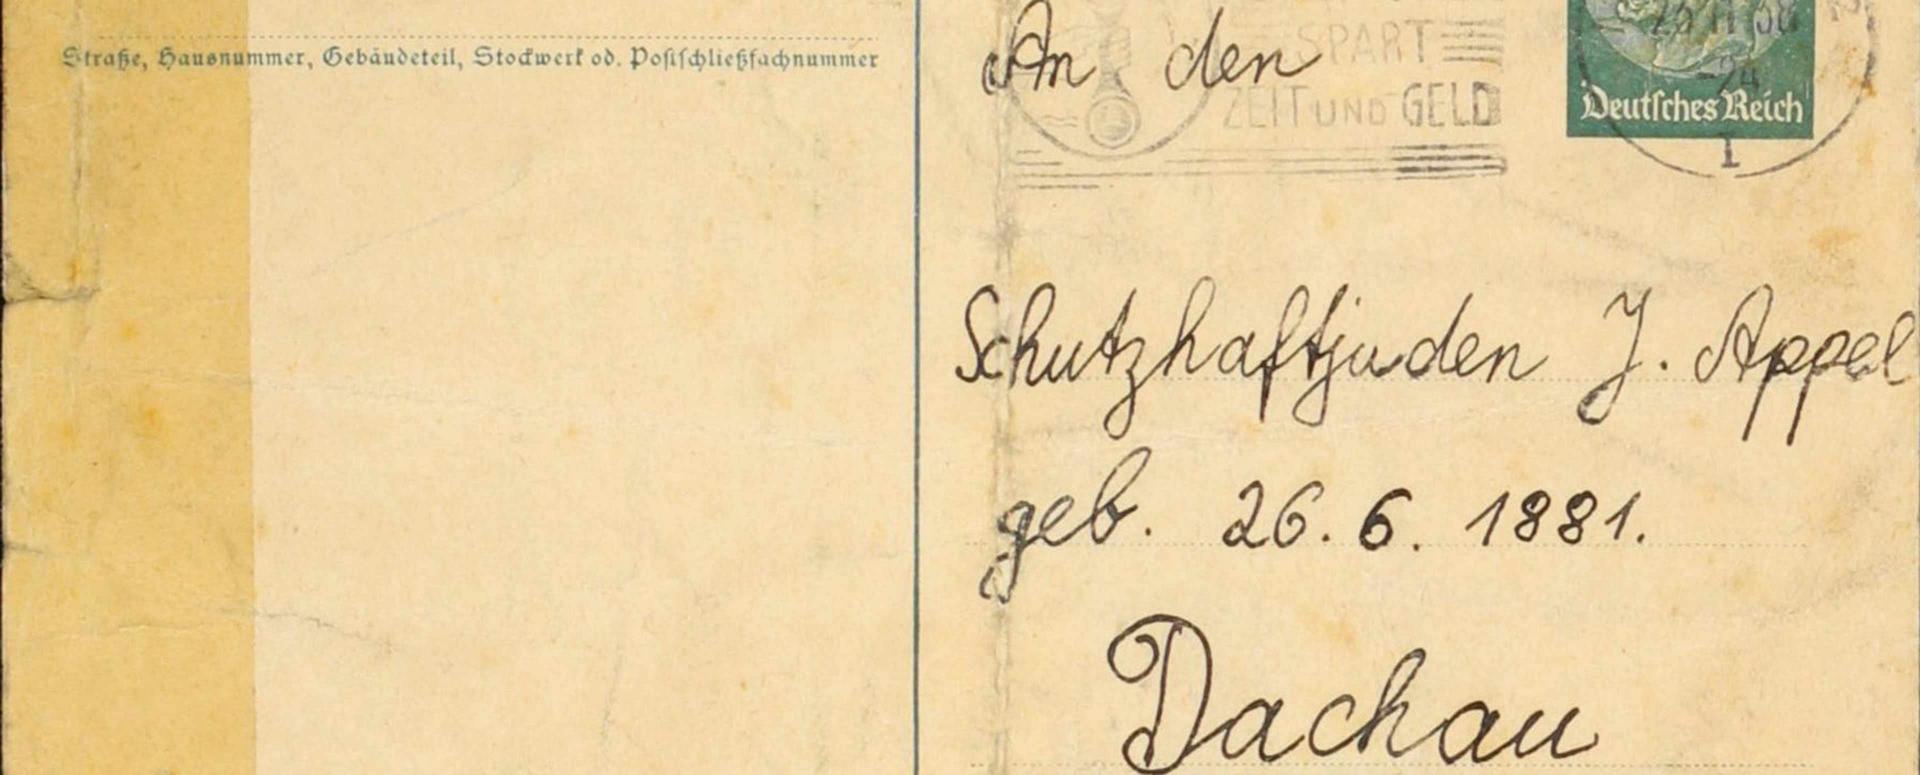 Andere Seite der Postkarte mit Anschrift »An den Schutzhaftjuden J. Appel« in »Dachau«.